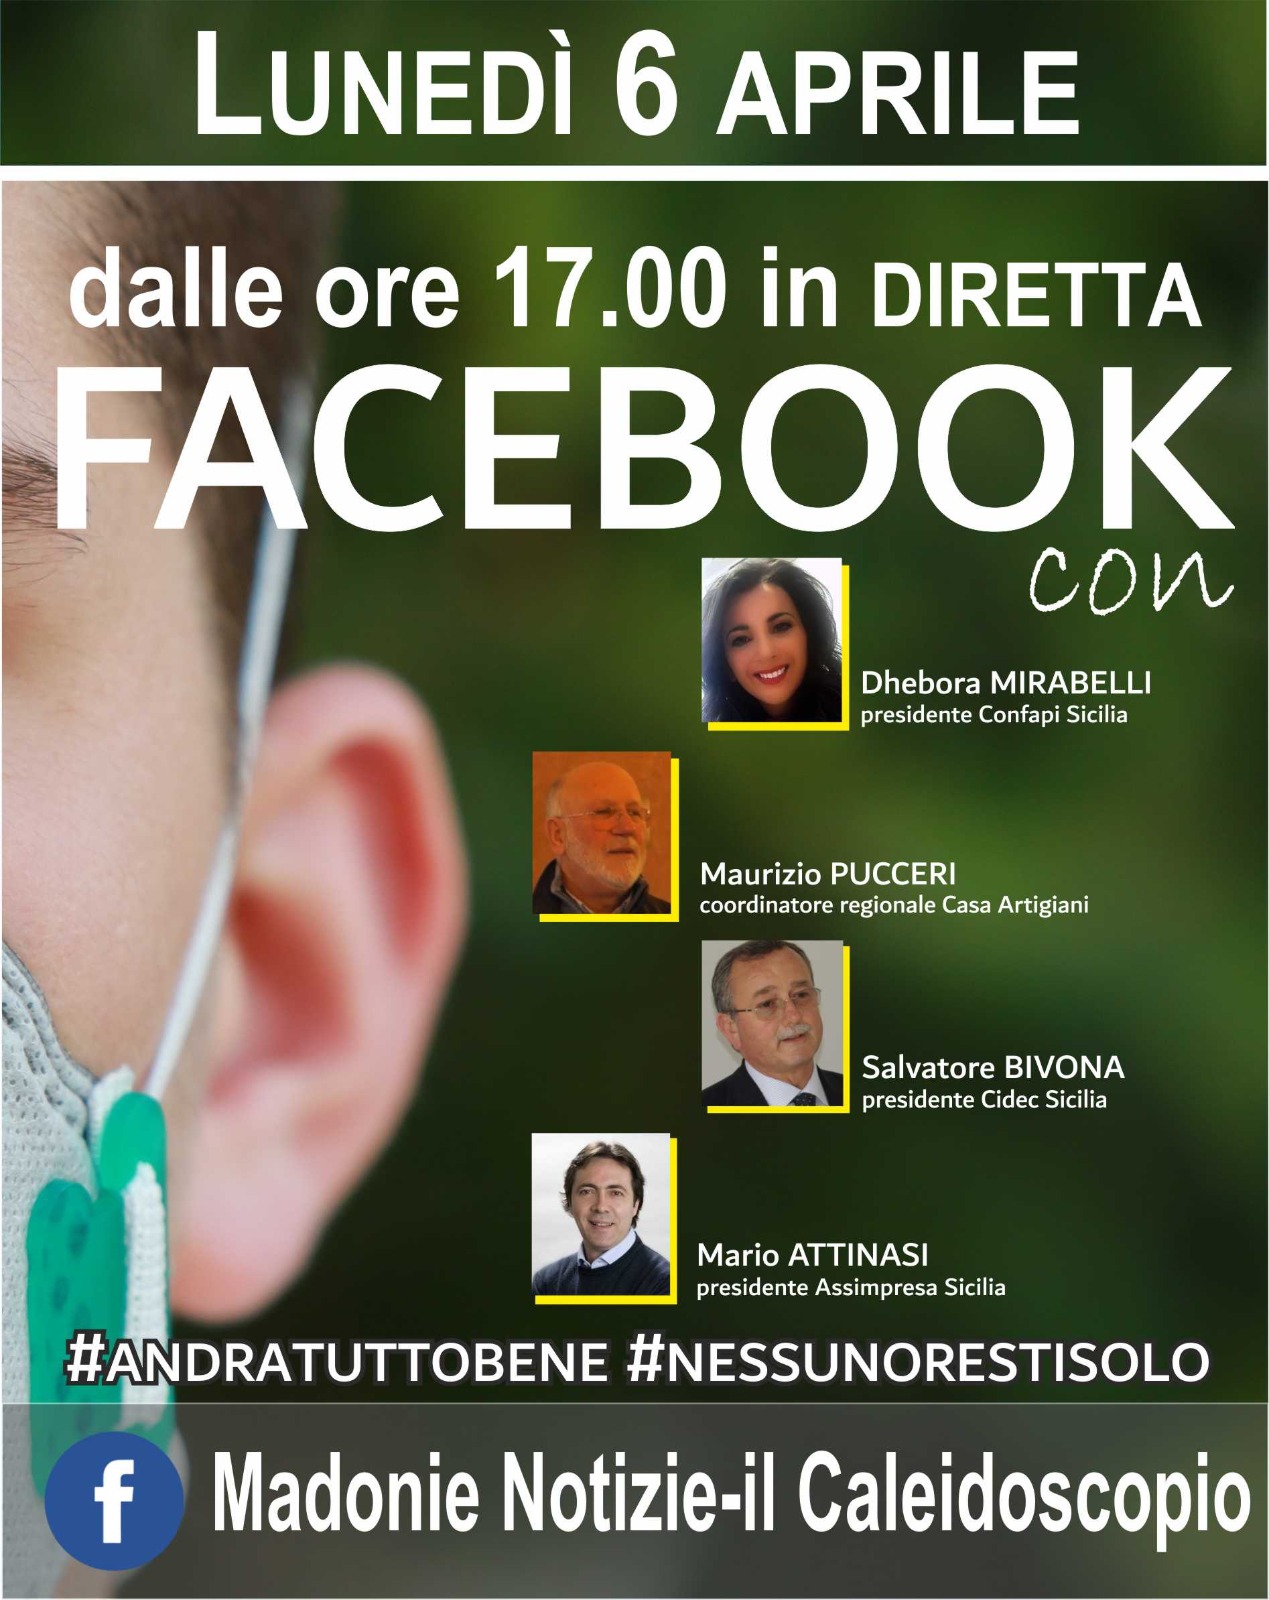 Al momento stai visualizzando Diretta Facebook con la Presidente Dhebora Mirabelli: #Nessunorestisolo